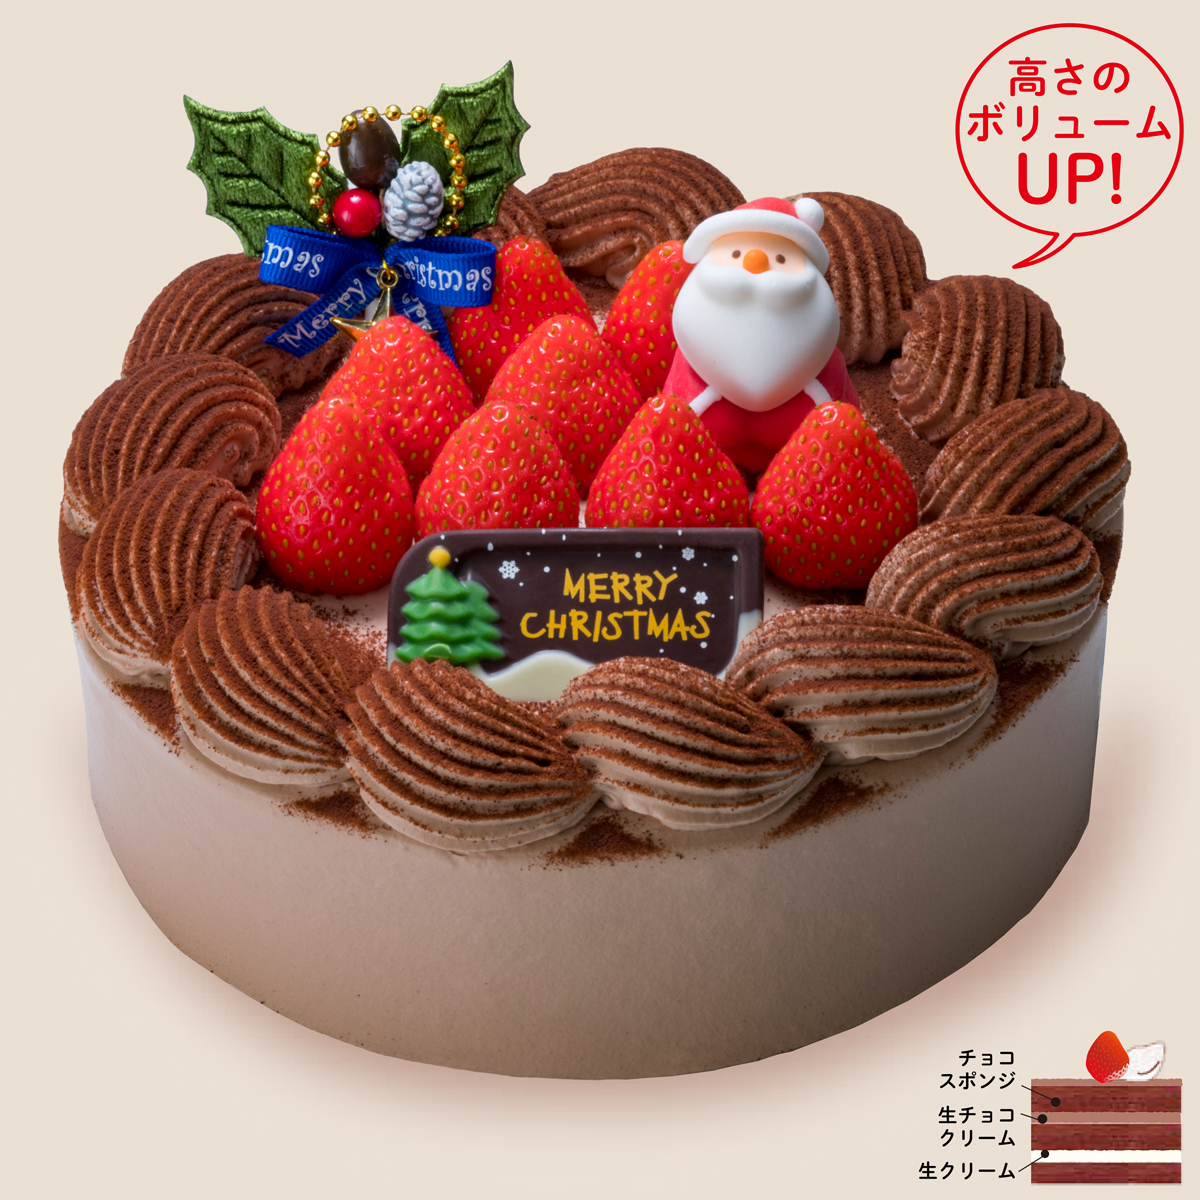 クリスマス・生チョコクリームデコレーション